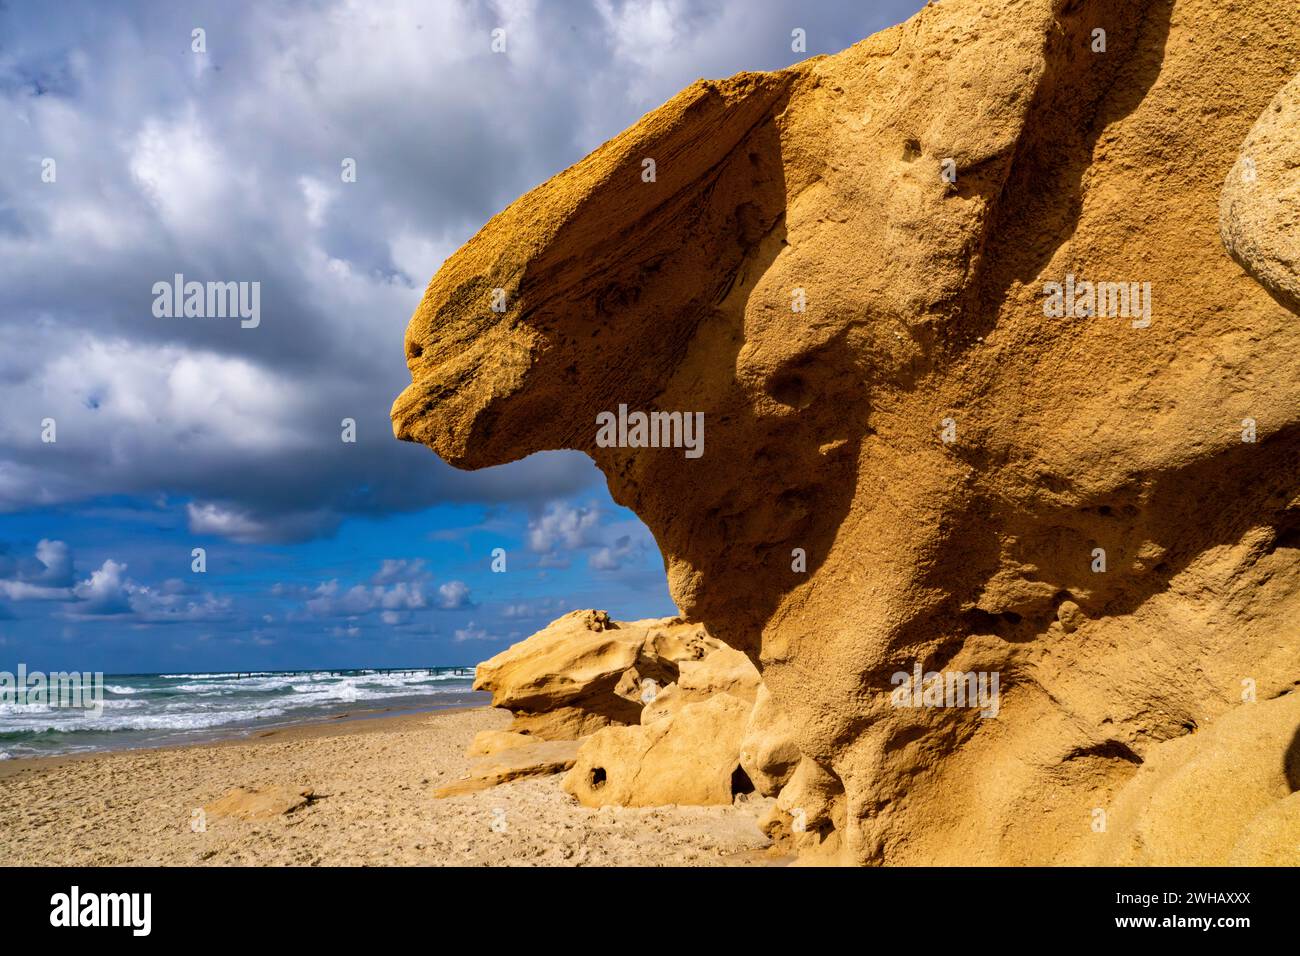 Arenaria a forma astratta formata dal vento e dall'acqua fotografata a Beit Yanai Beach, Israele Foto Stock